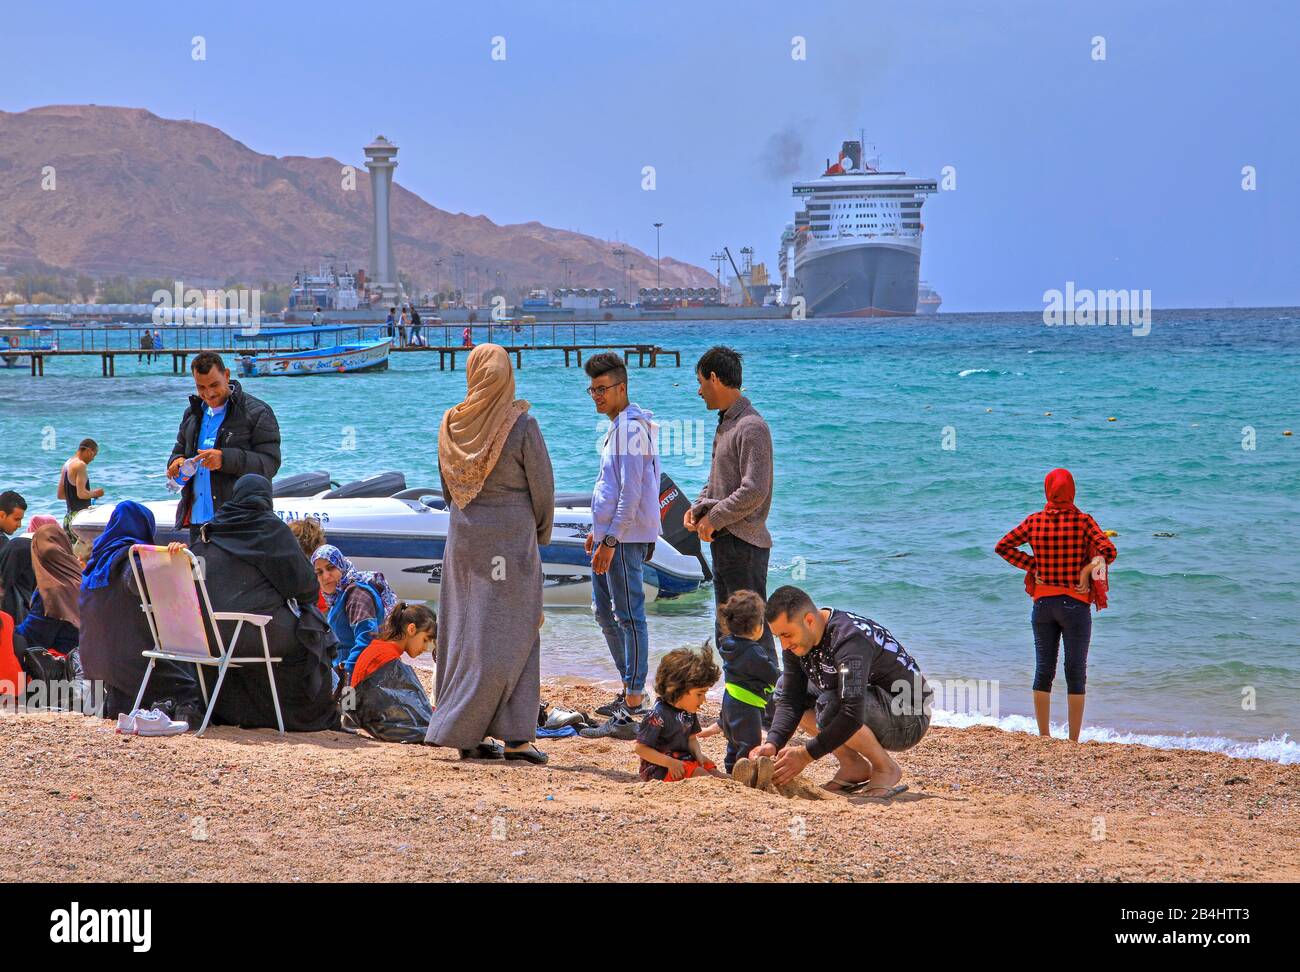 Les habitants de la plage de la ville avec vue sur le port d'Akaba Aqaba, le golfe d'Aqaba, la mer Rouge, la Jordanie Banque D'Images